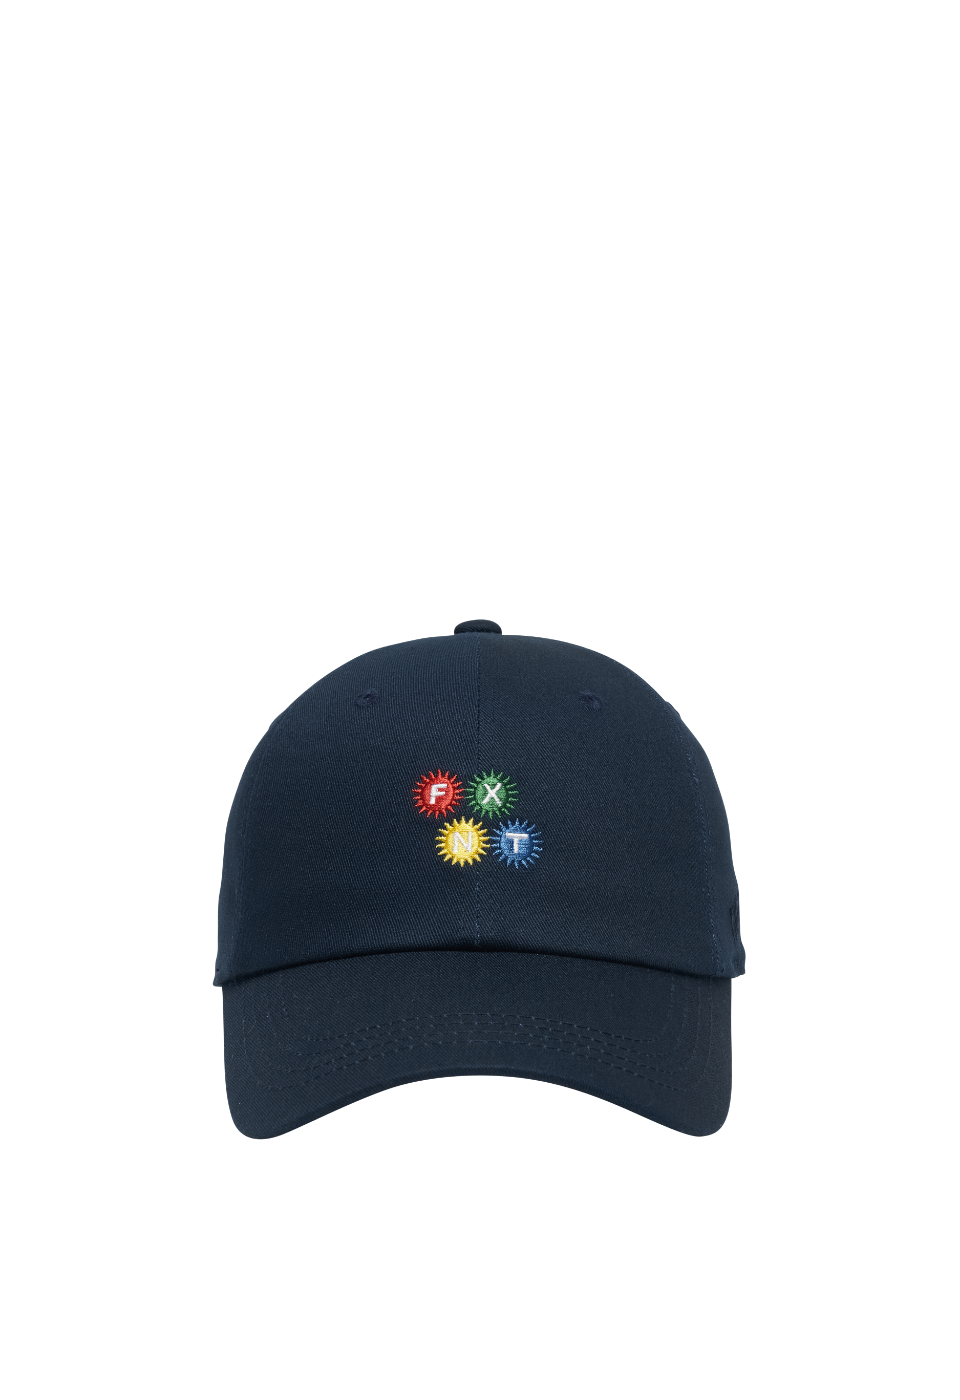 COLOR BALL CAP(NAVY)